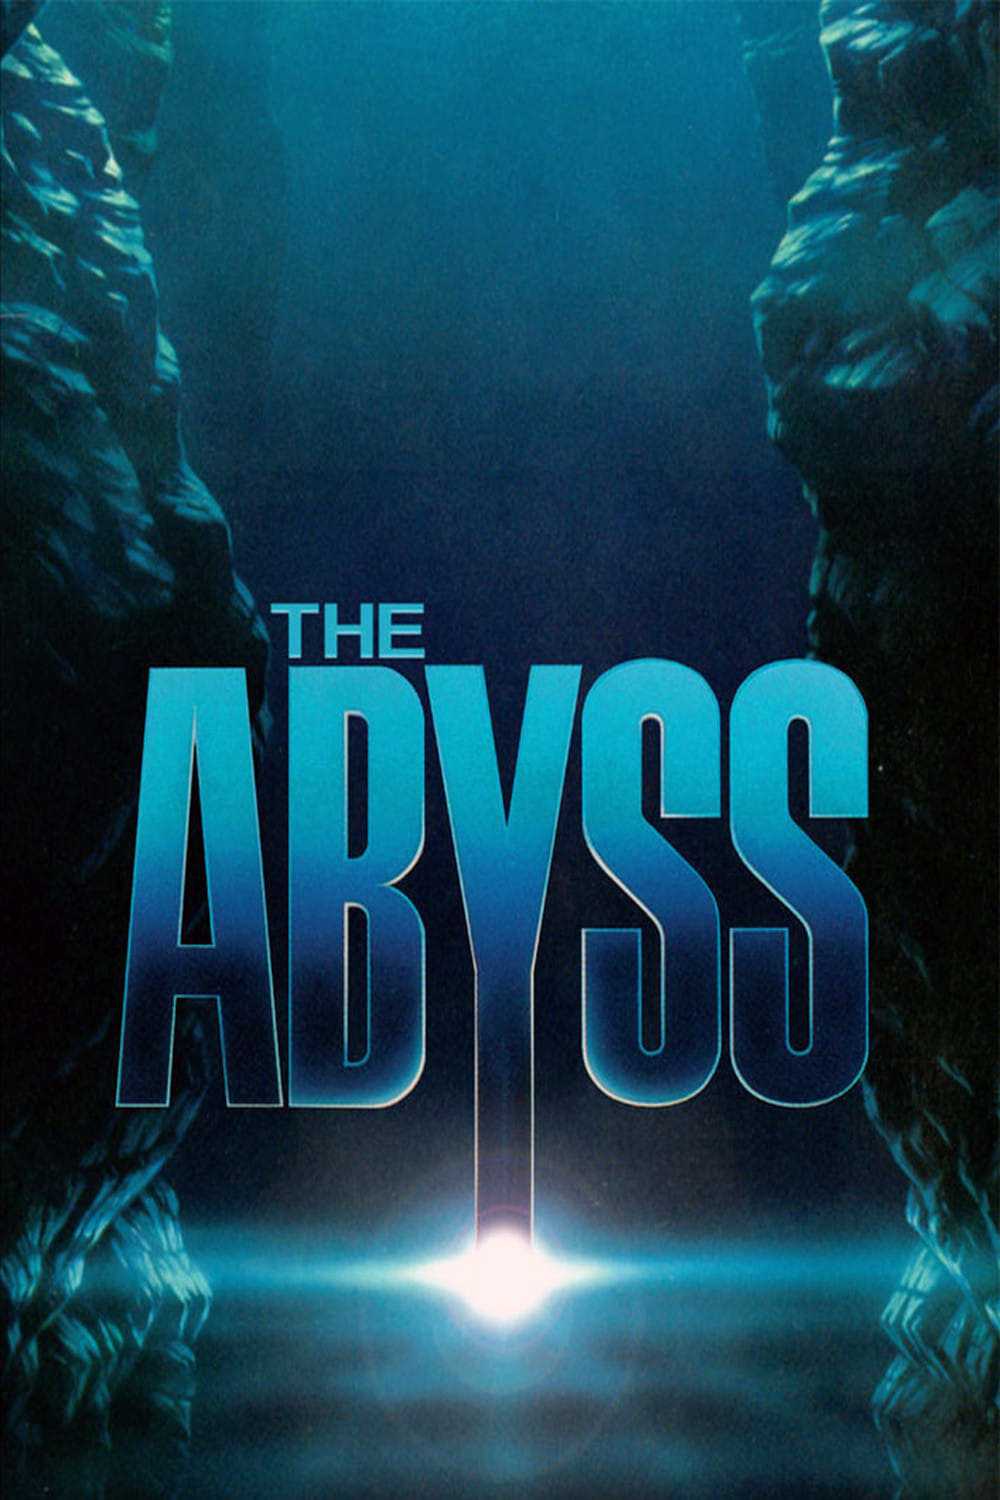 Vực thẳm - The abyss